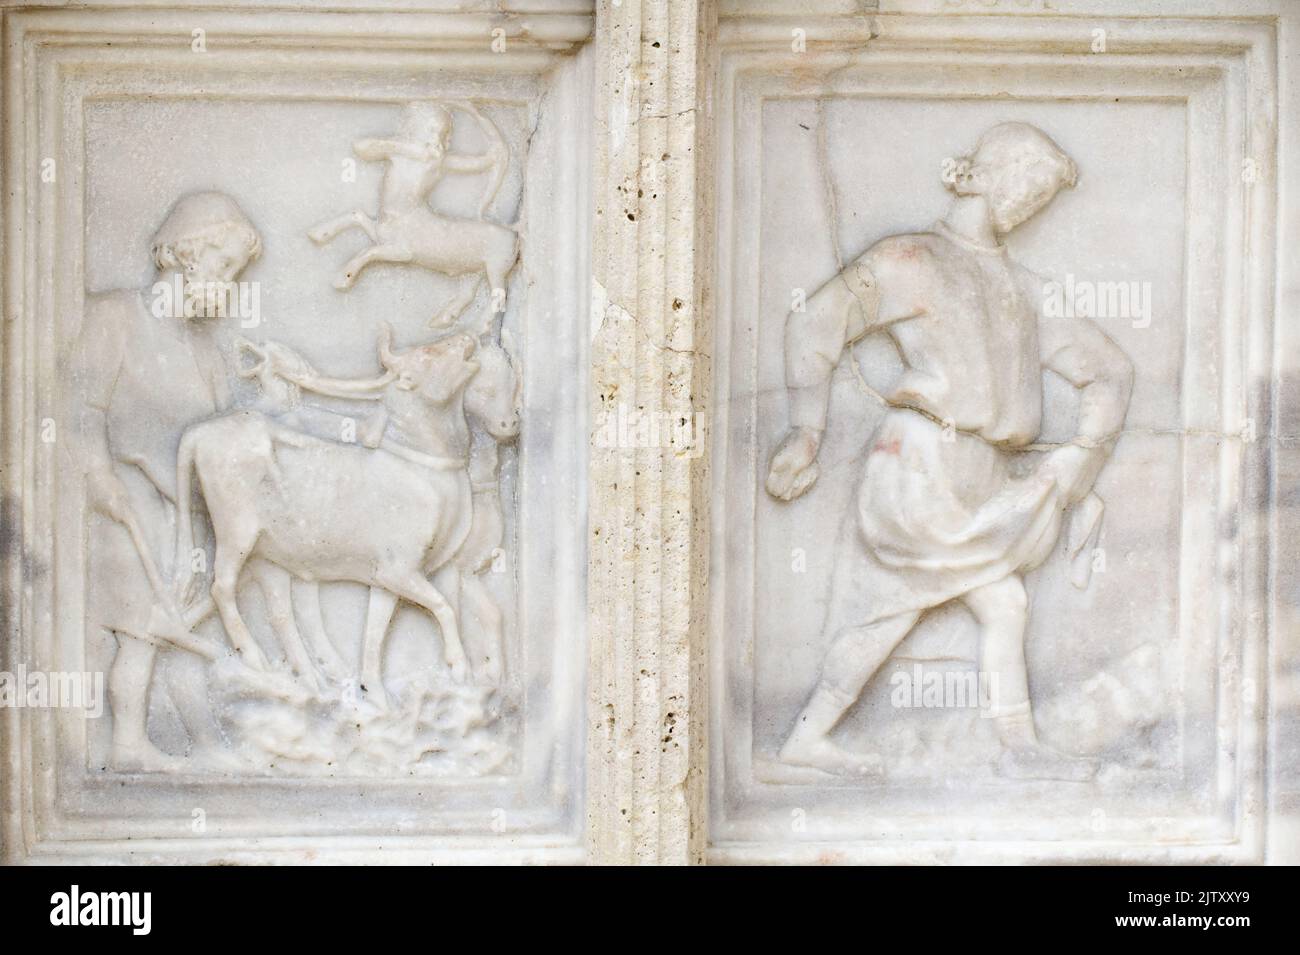 Novembre : le labour et l'ensemencement - détail de Fontana Maggiore (1275), un chef-d'œuvre de sculpture médiévale symbole de la ville de Pérouse - Italie Banque D'Images